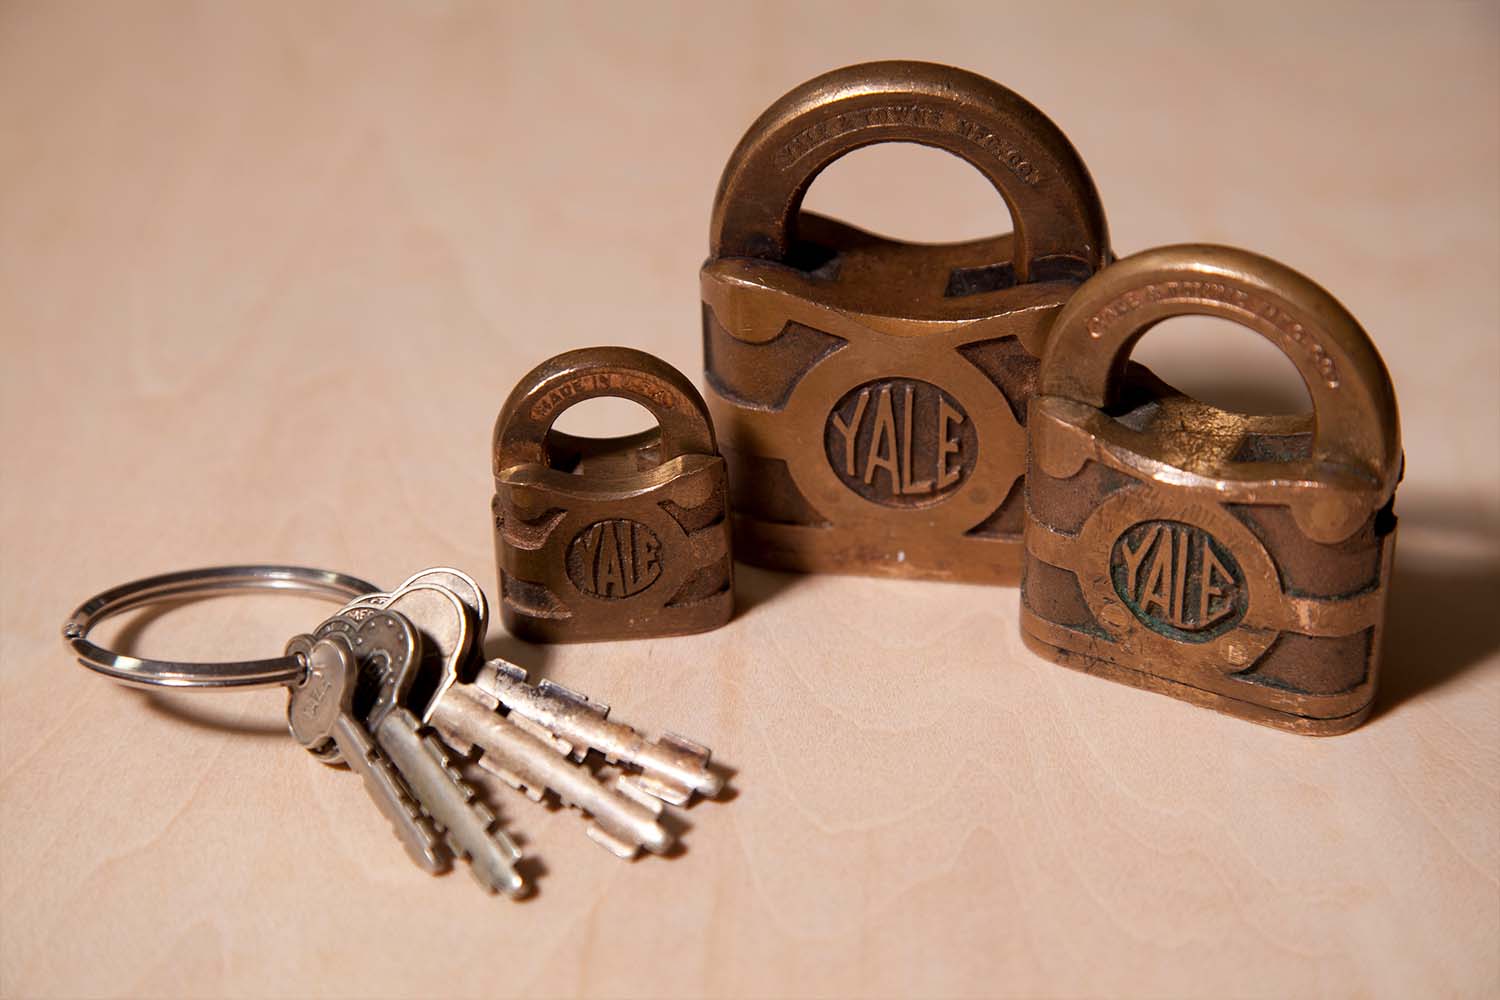 Three Yale locks with keys